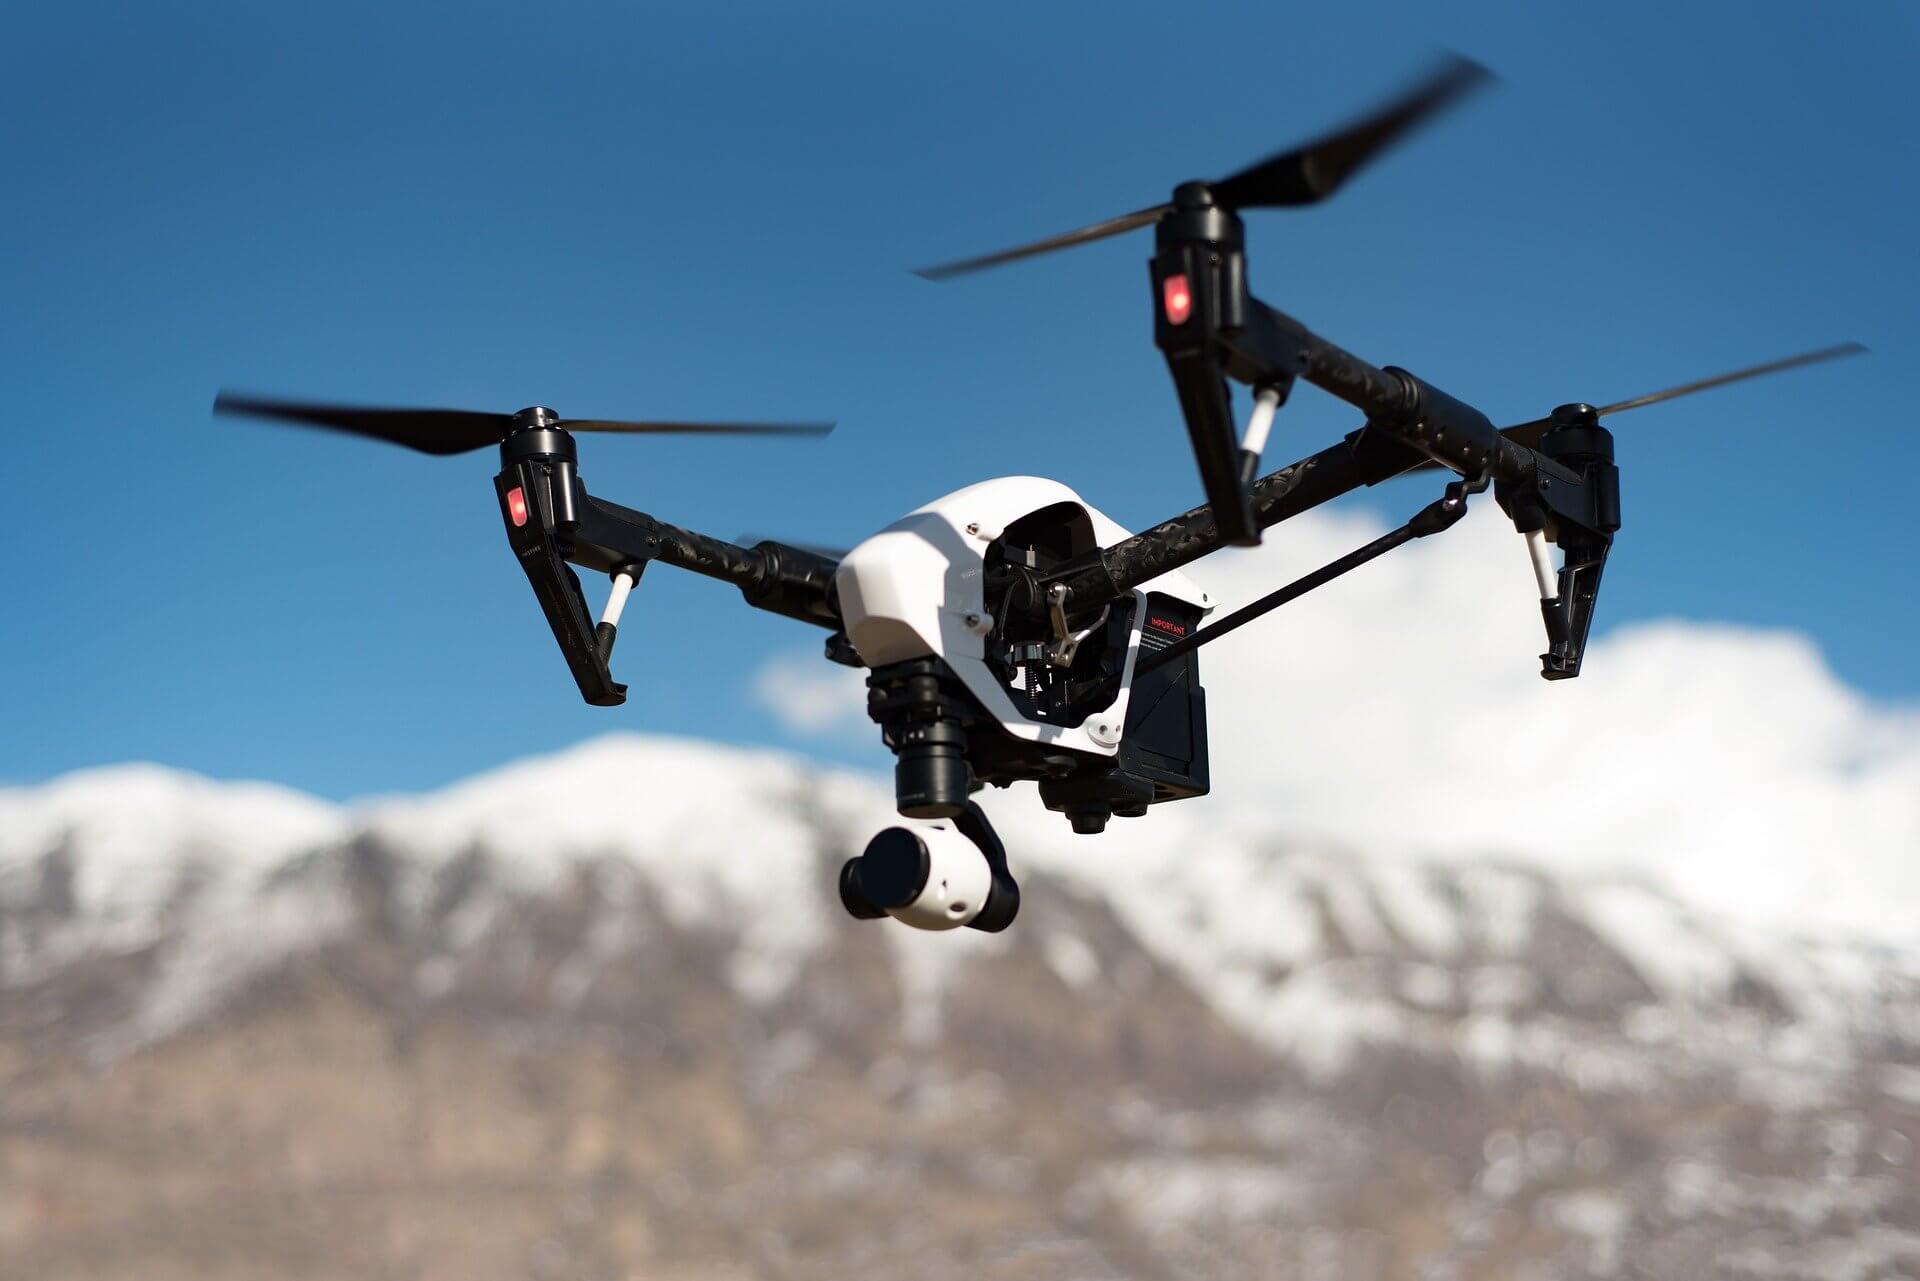  qué amenazas a la seguridad plantean los drones